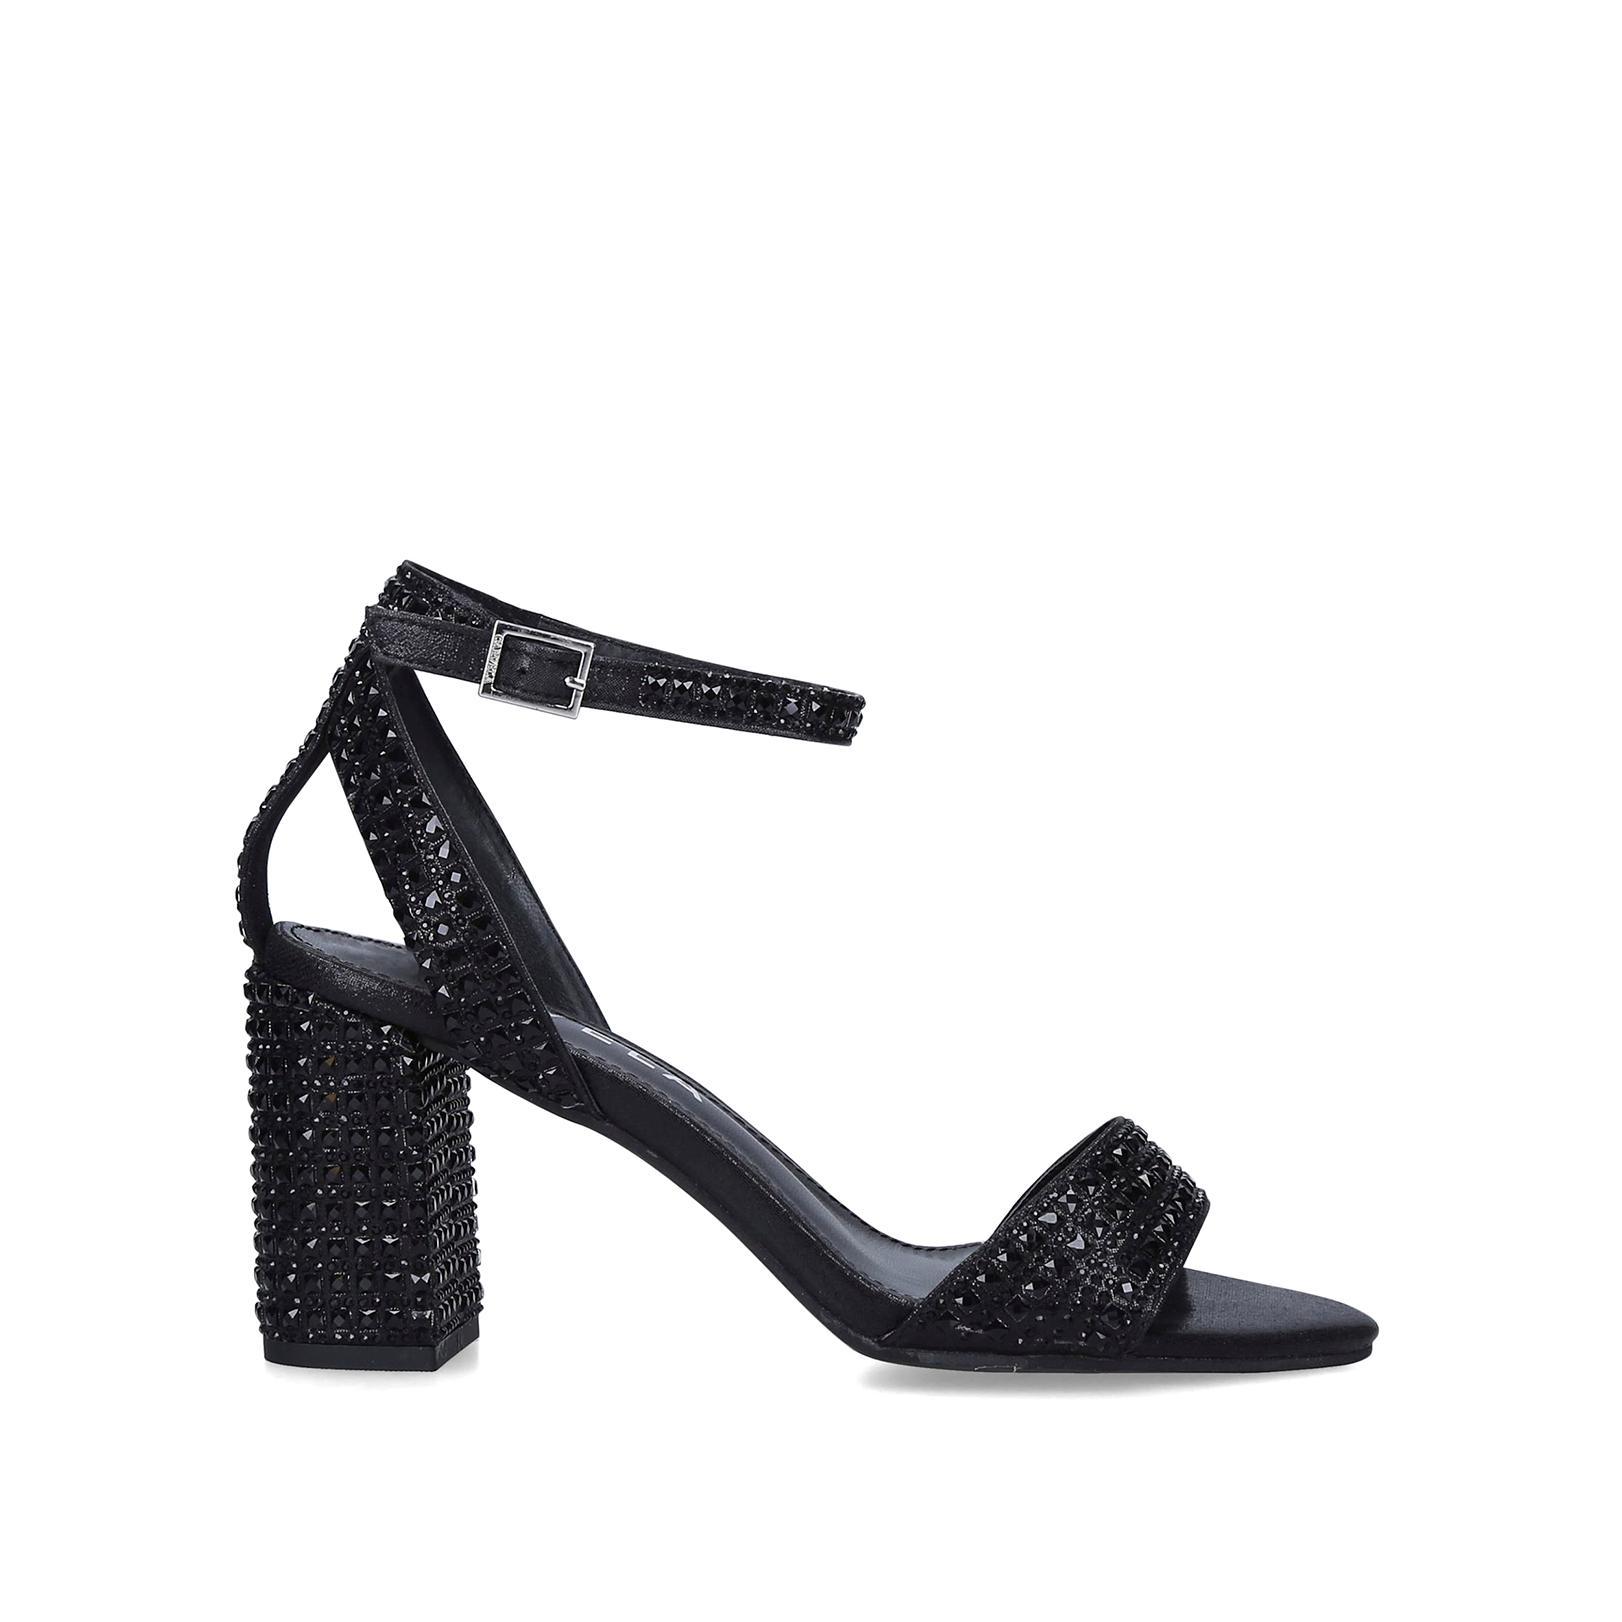 KIANNI Black Embellished Block Heel Sandals by CARVELA